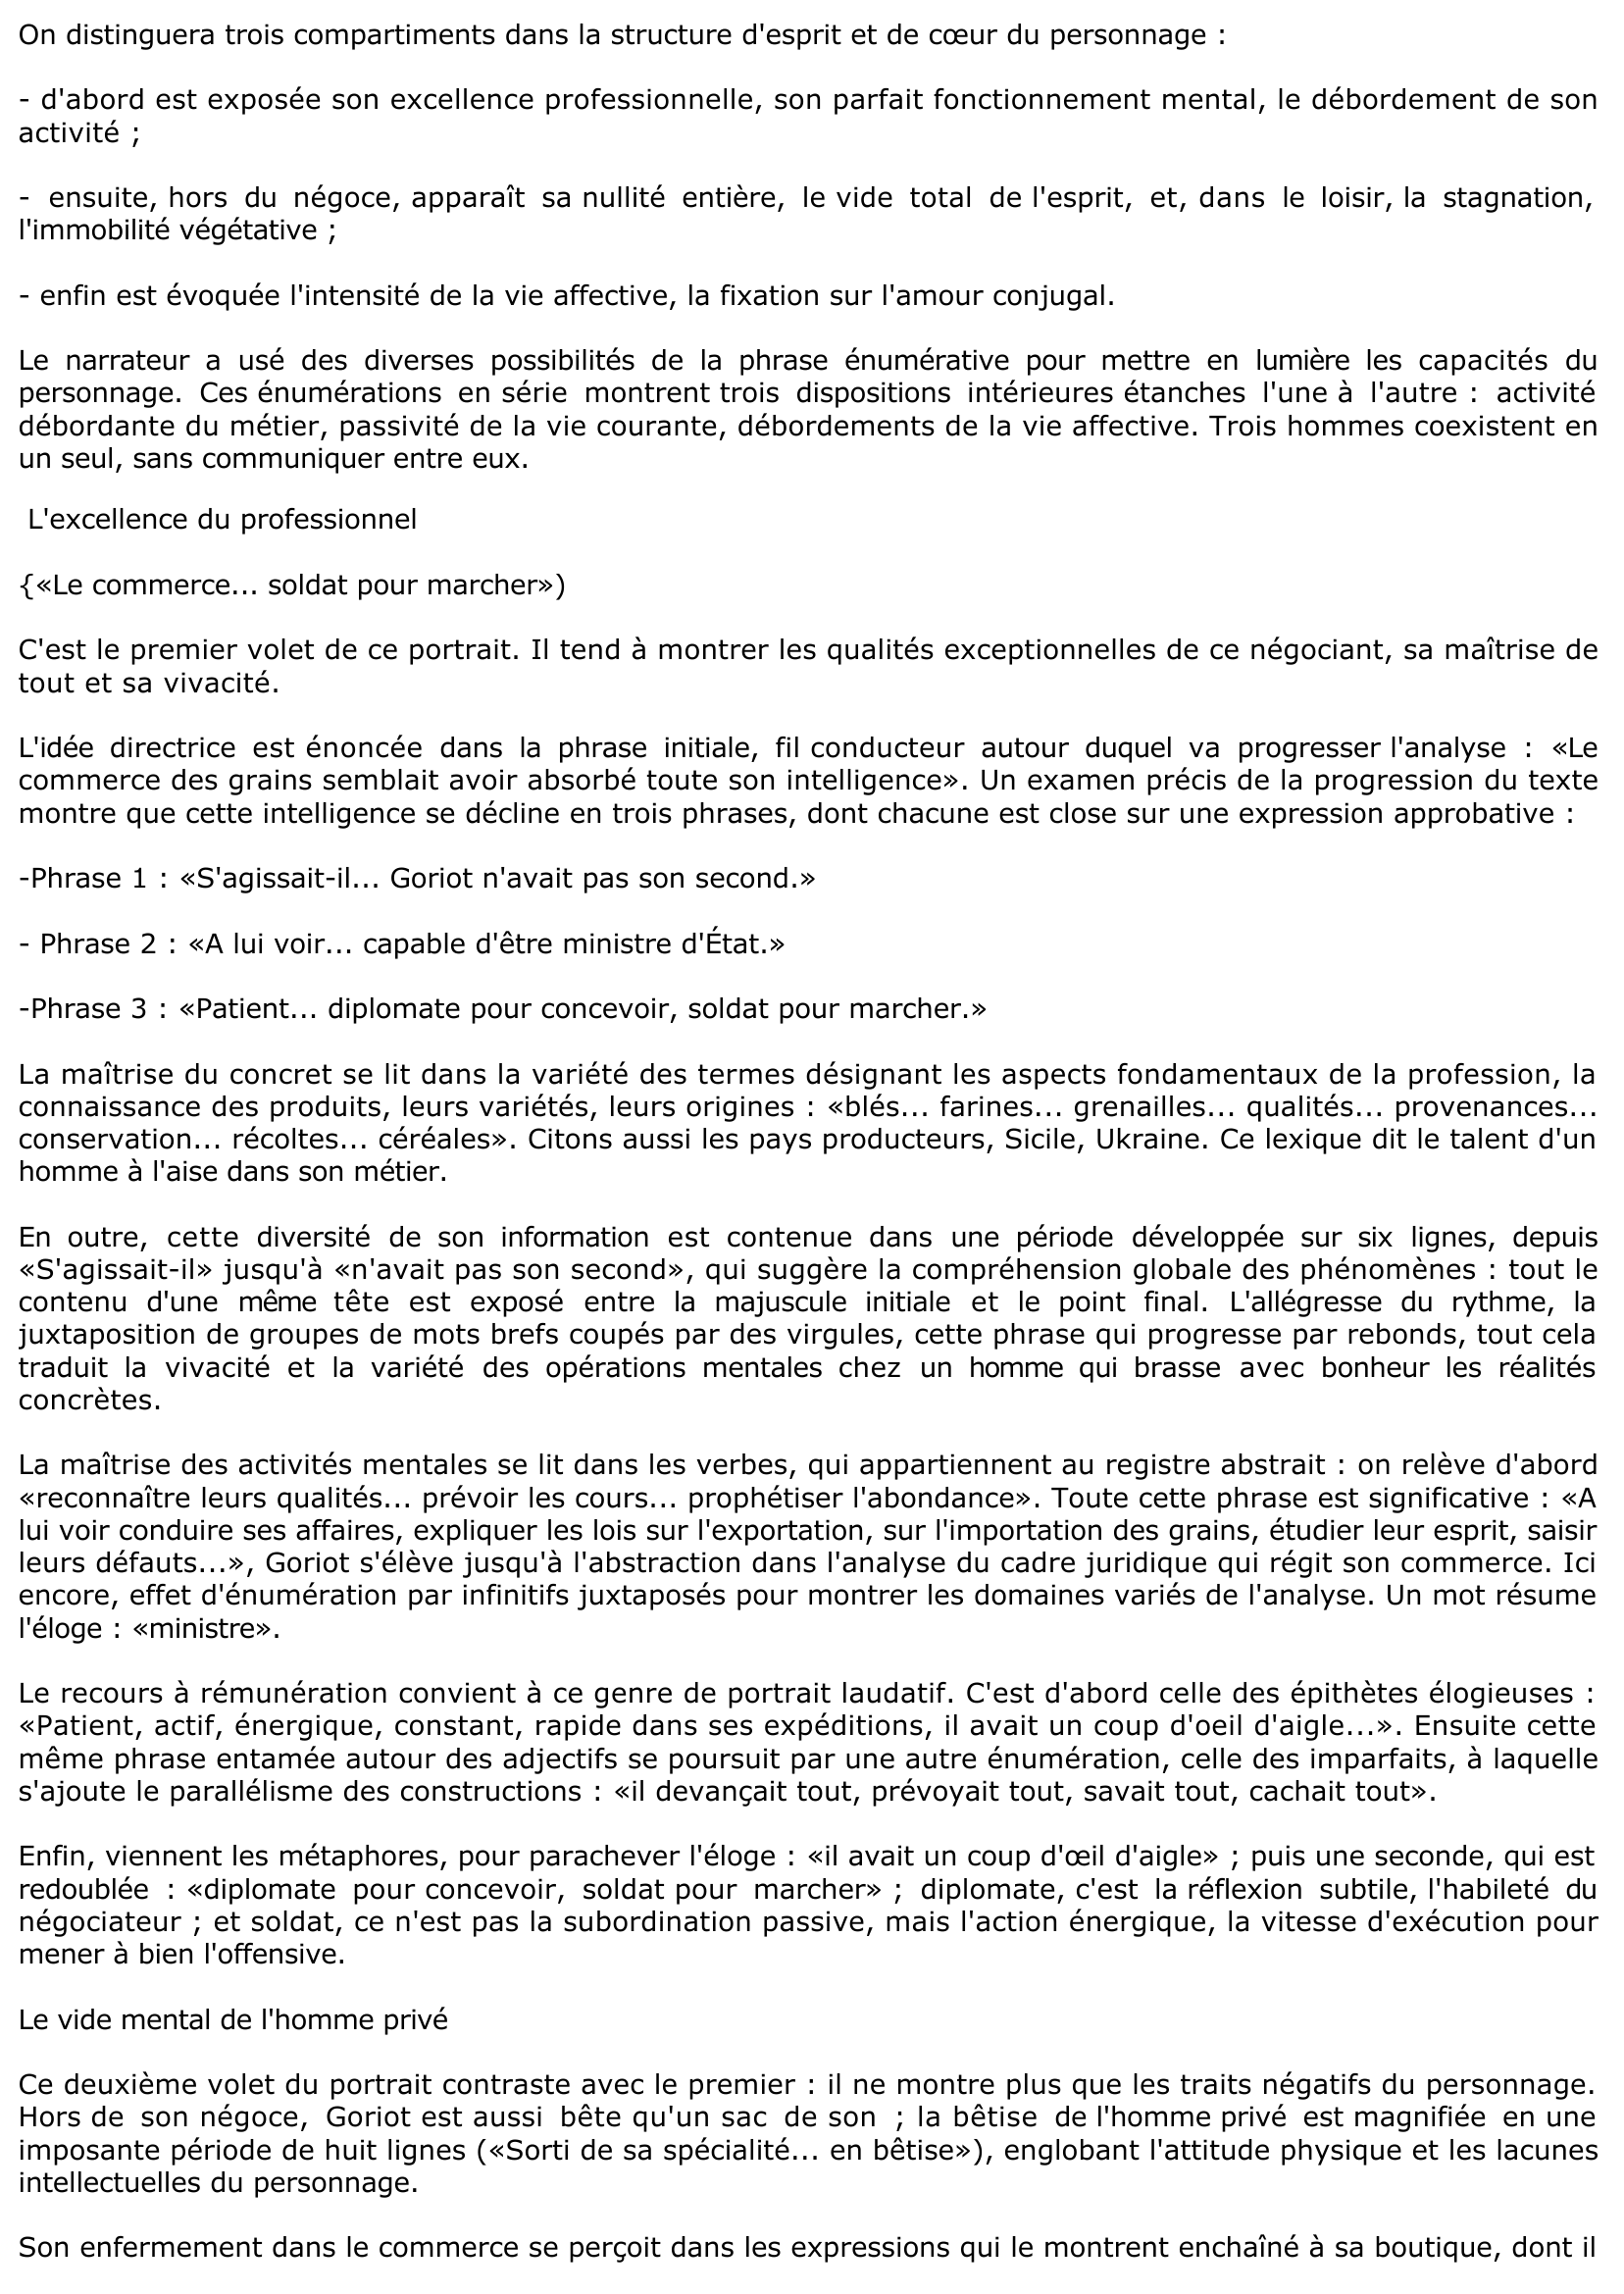 Prévisualisation du document La configuration psychique de Goriot («Le commerce des grains... bizarreries morales», pp. 126-127) - Le père Goriot de Balzac